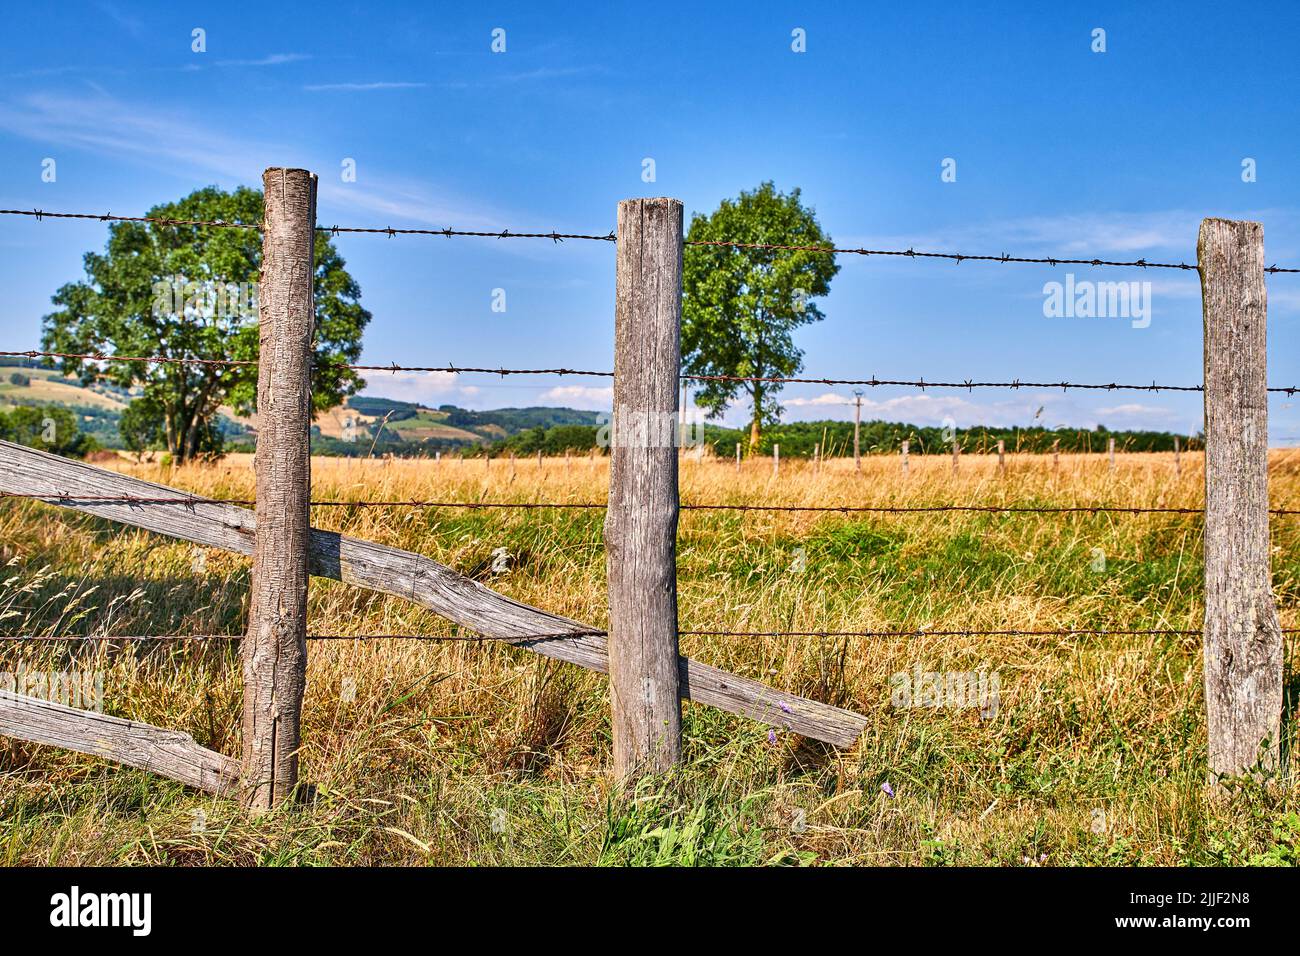 Landwirtschaftliches Feld mit Kopierfläche am blauen Himmel. Bewachsenes Gras in eingezäunten isolierten landwirtschaftlichen Bereich. Bauernhof mit üppigen Bäumen und gelb und grün Stockfoto